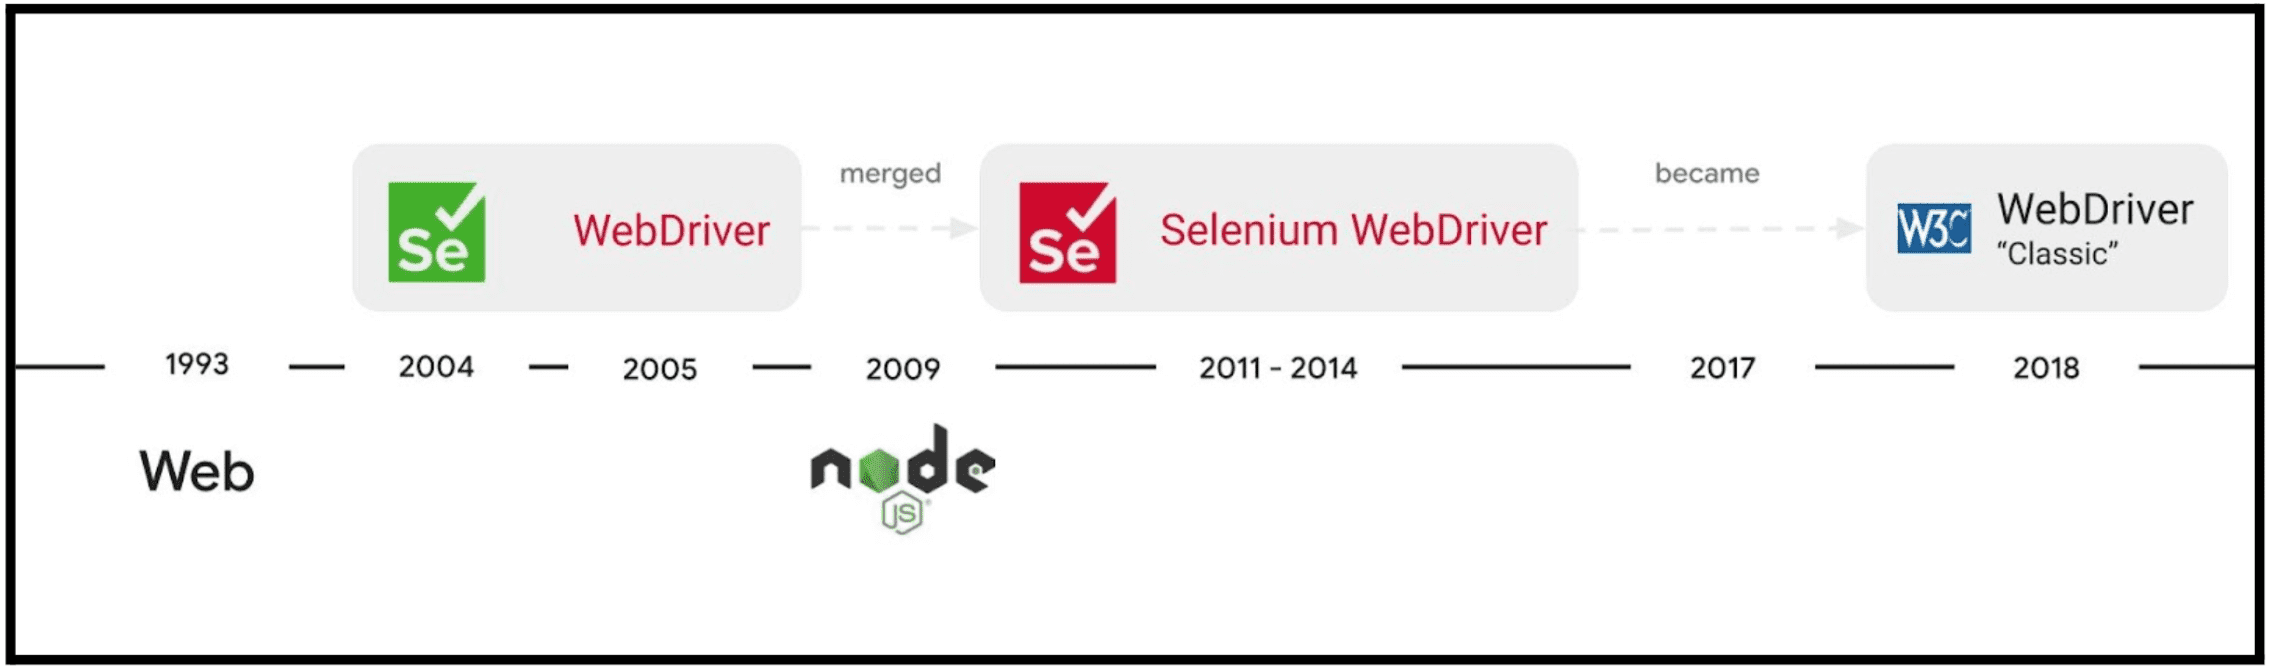 Selenium WebDriver 项目的发展。